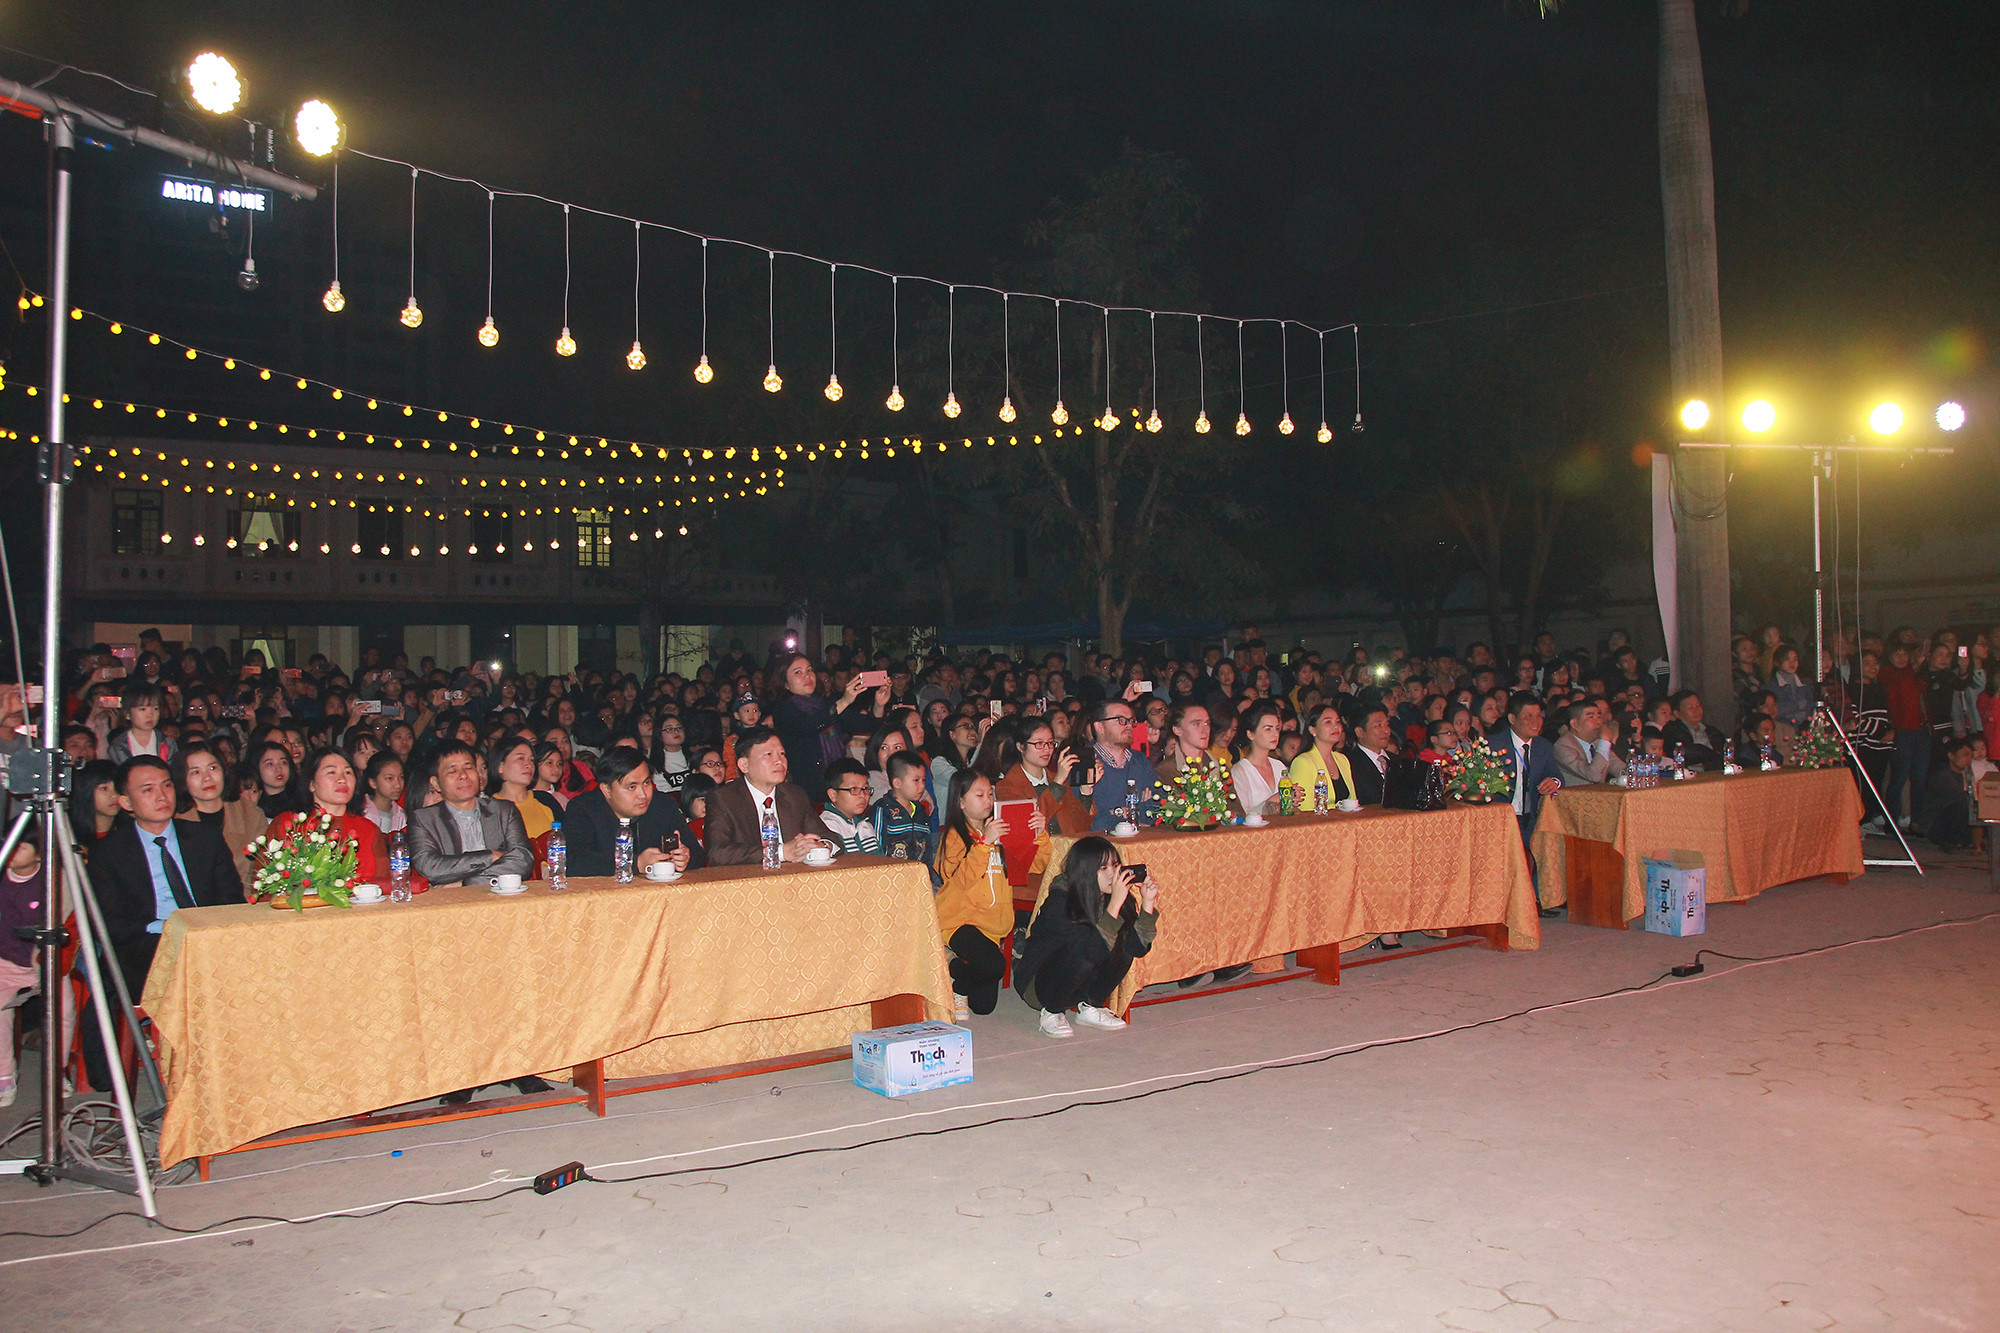 Tối 20/1, chương trình Cherished Winter do thầy trò trường THPT Hà Huy Tập tổ chức đã thu hút hàng nghìn bạn trẻ đến tham gia.Ảnh: Chu Thanh